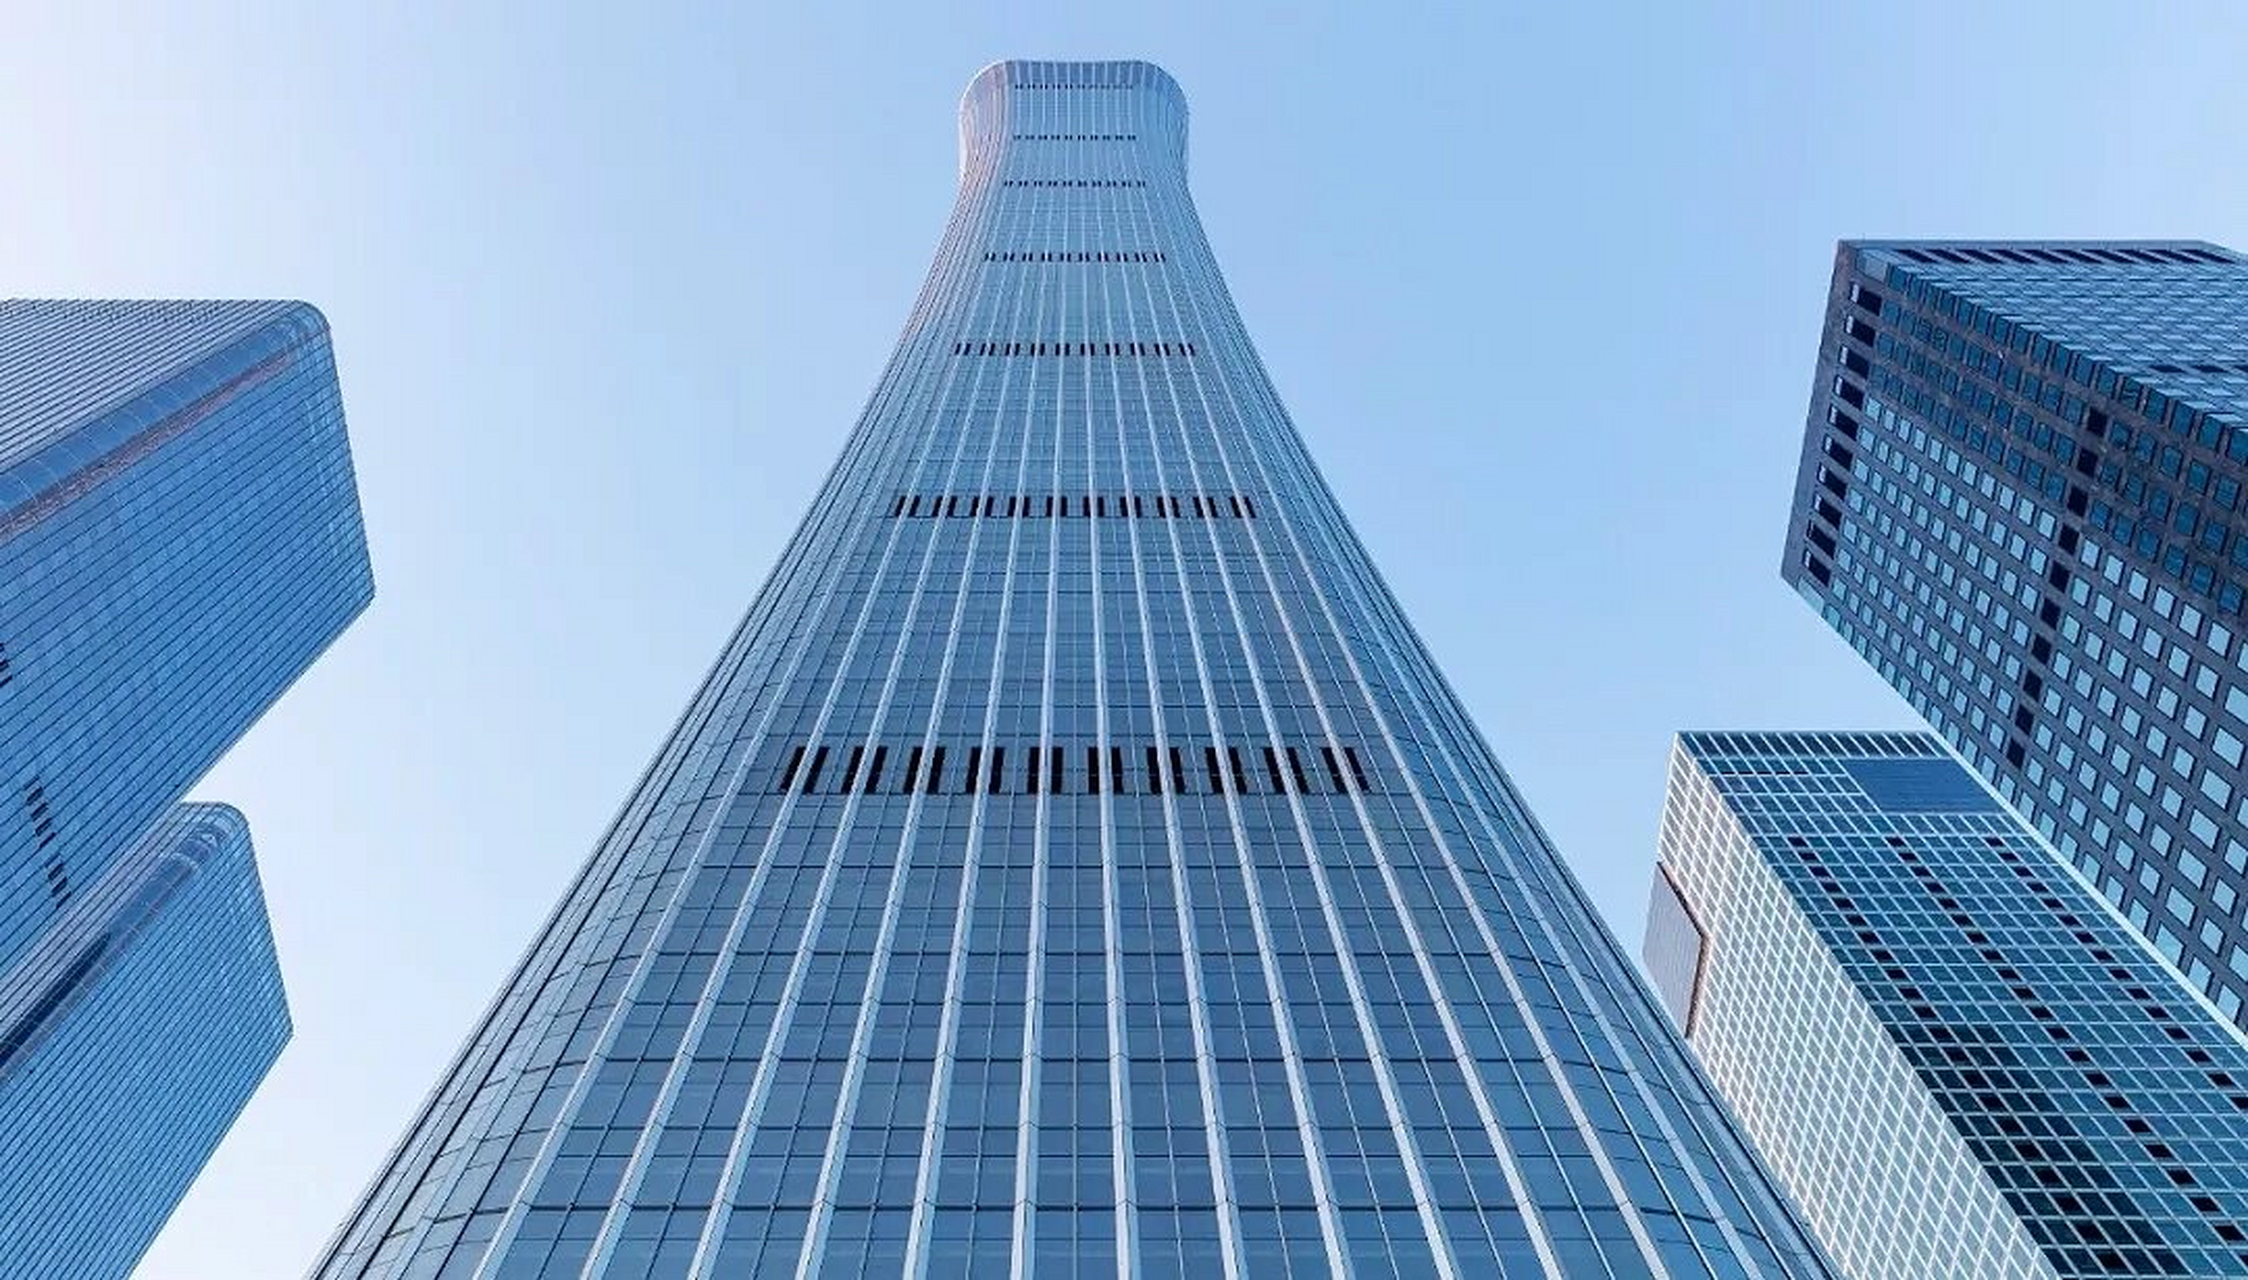 528米,北京第一高楼 中国尊中信大厦的设计灵感来自尊,这是一种起